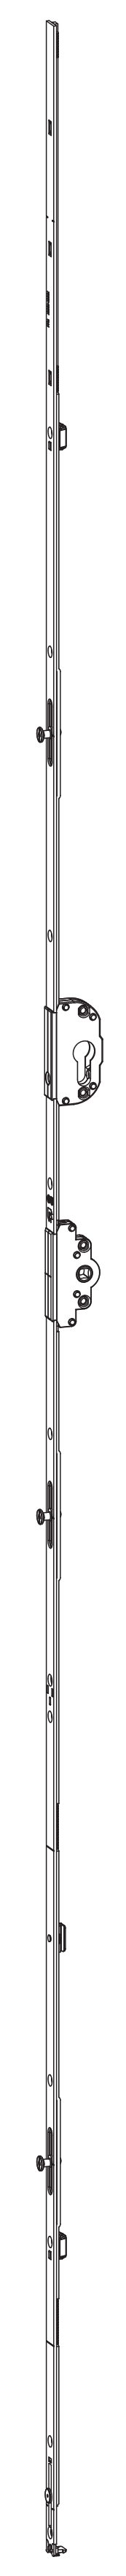 GU-ITALIA -  Cremonese UNI-JET anta ribalta altezza maniglia fissa con foro cilindro sopra la maniglia e quadro - gr / dim. 2190 - entrata 50 - alt. man. 950 - lbb/hbb 2101 - 2350